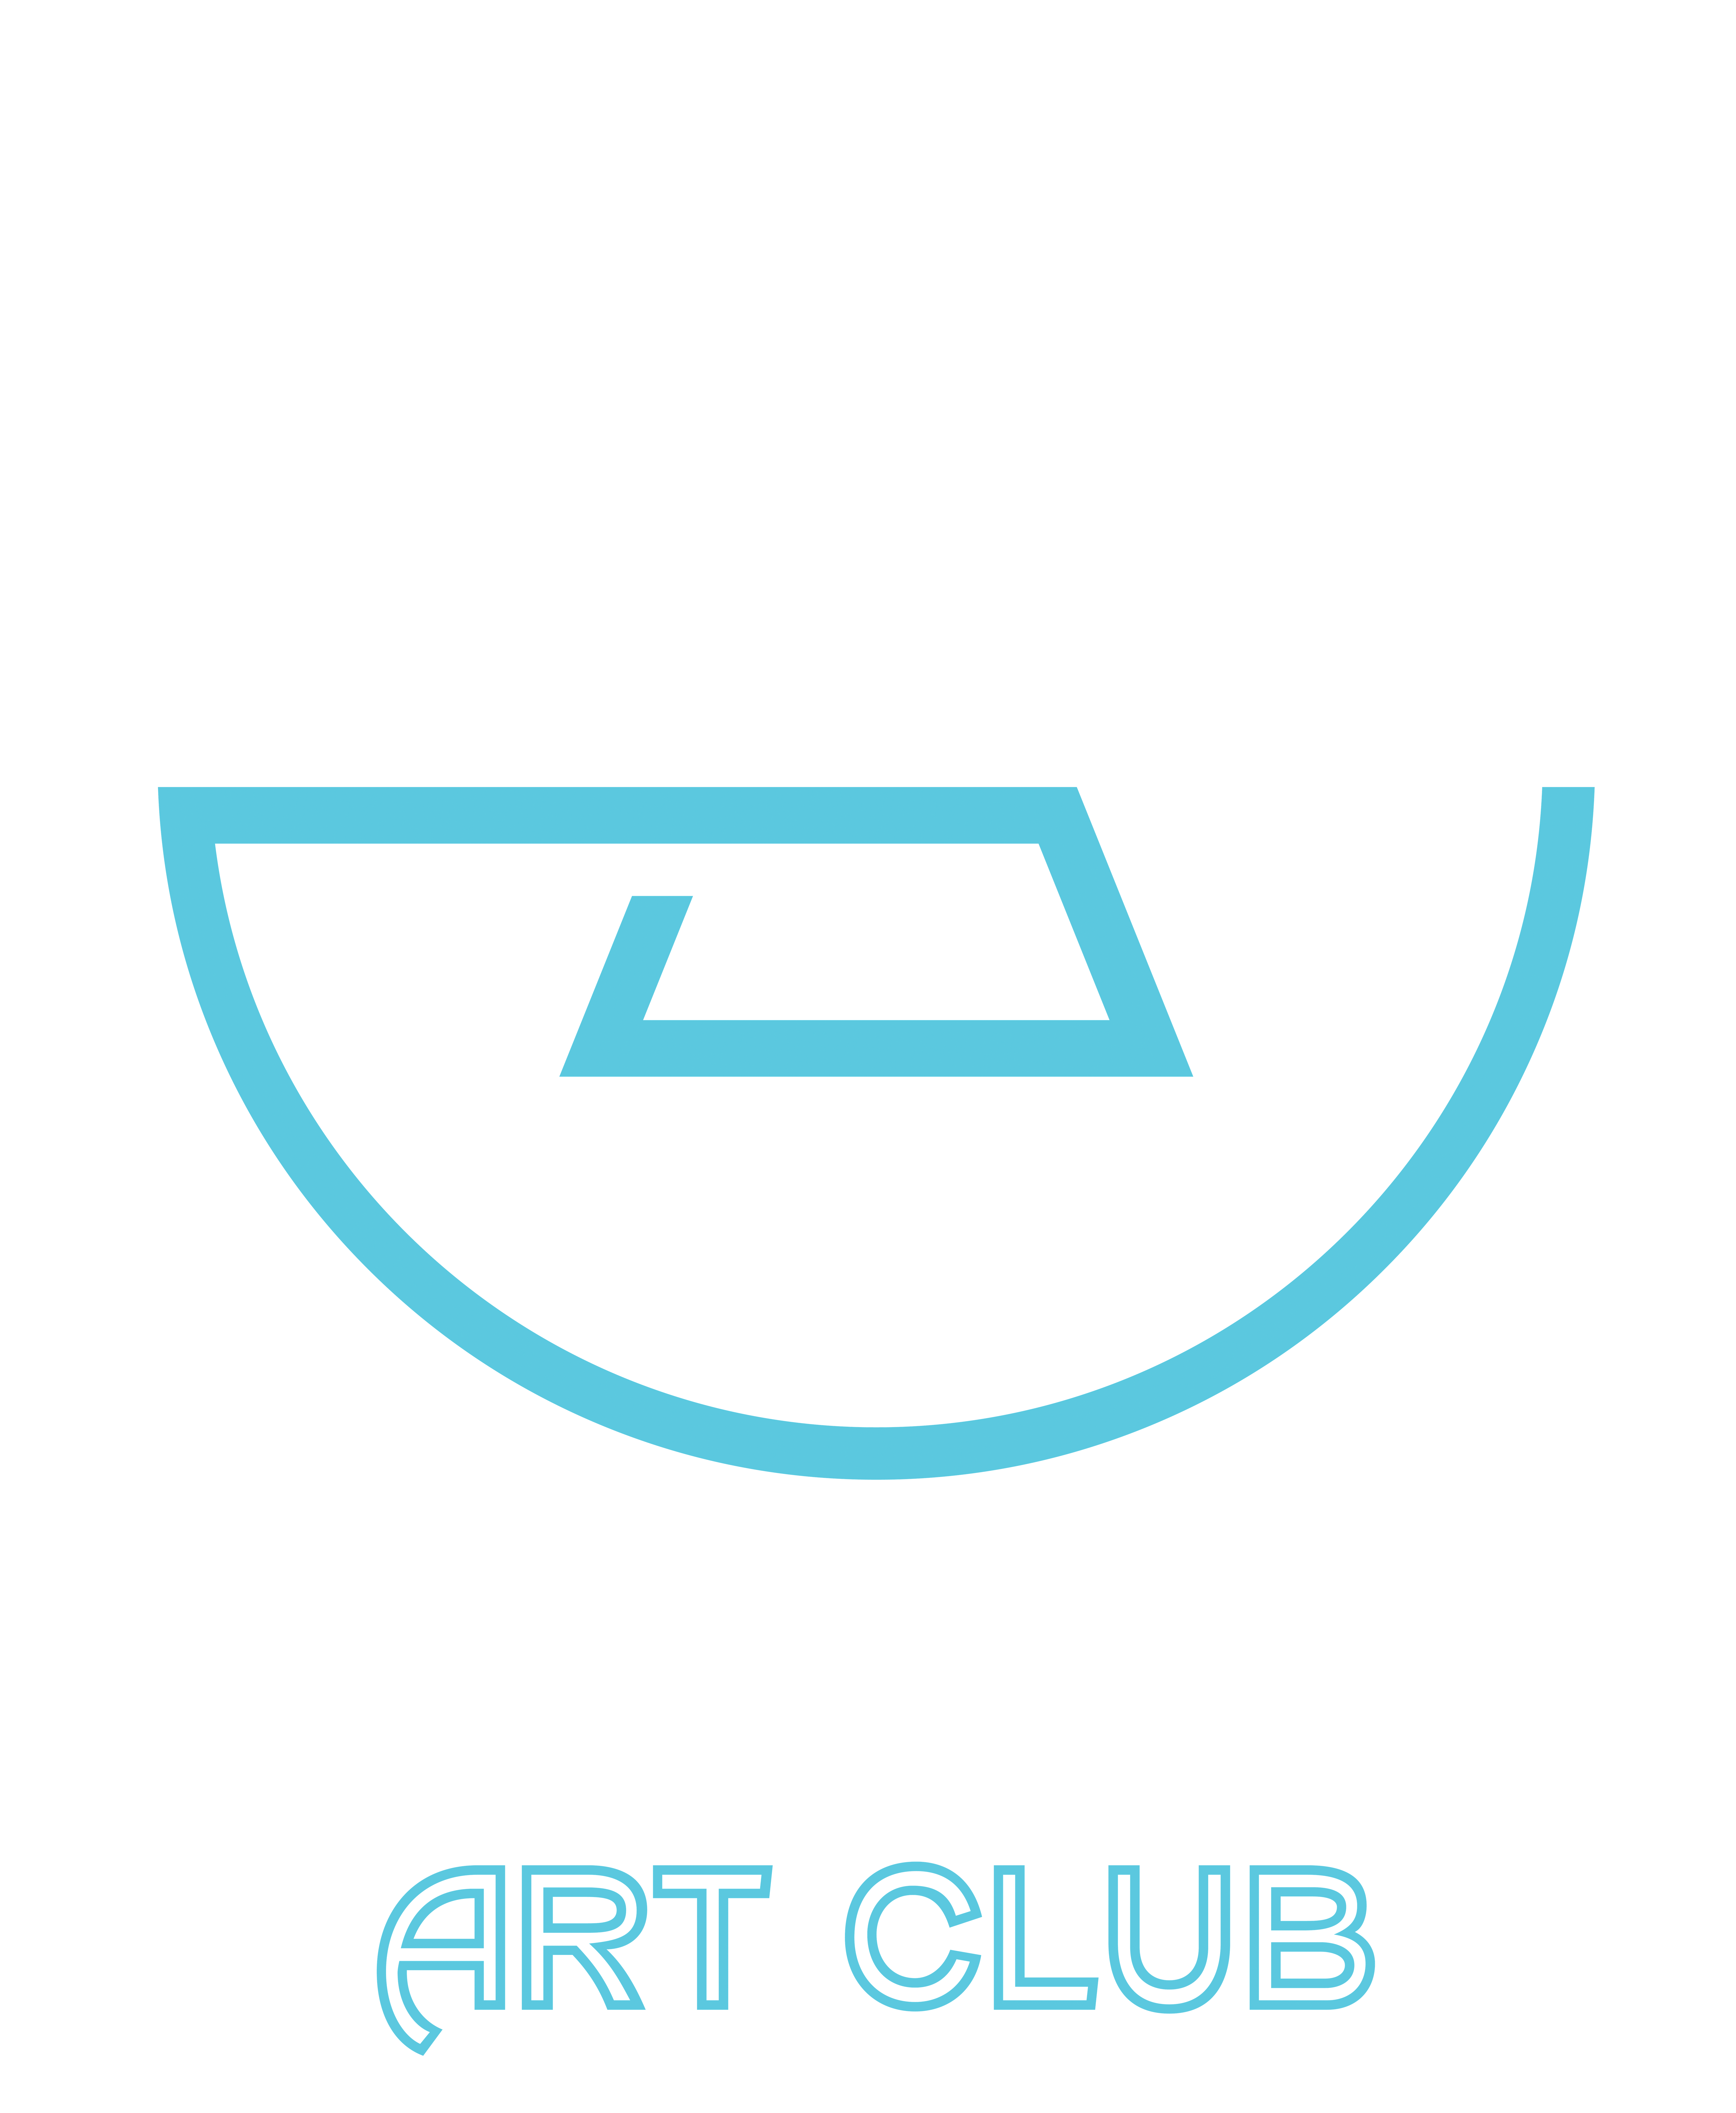 All Sports Art Club